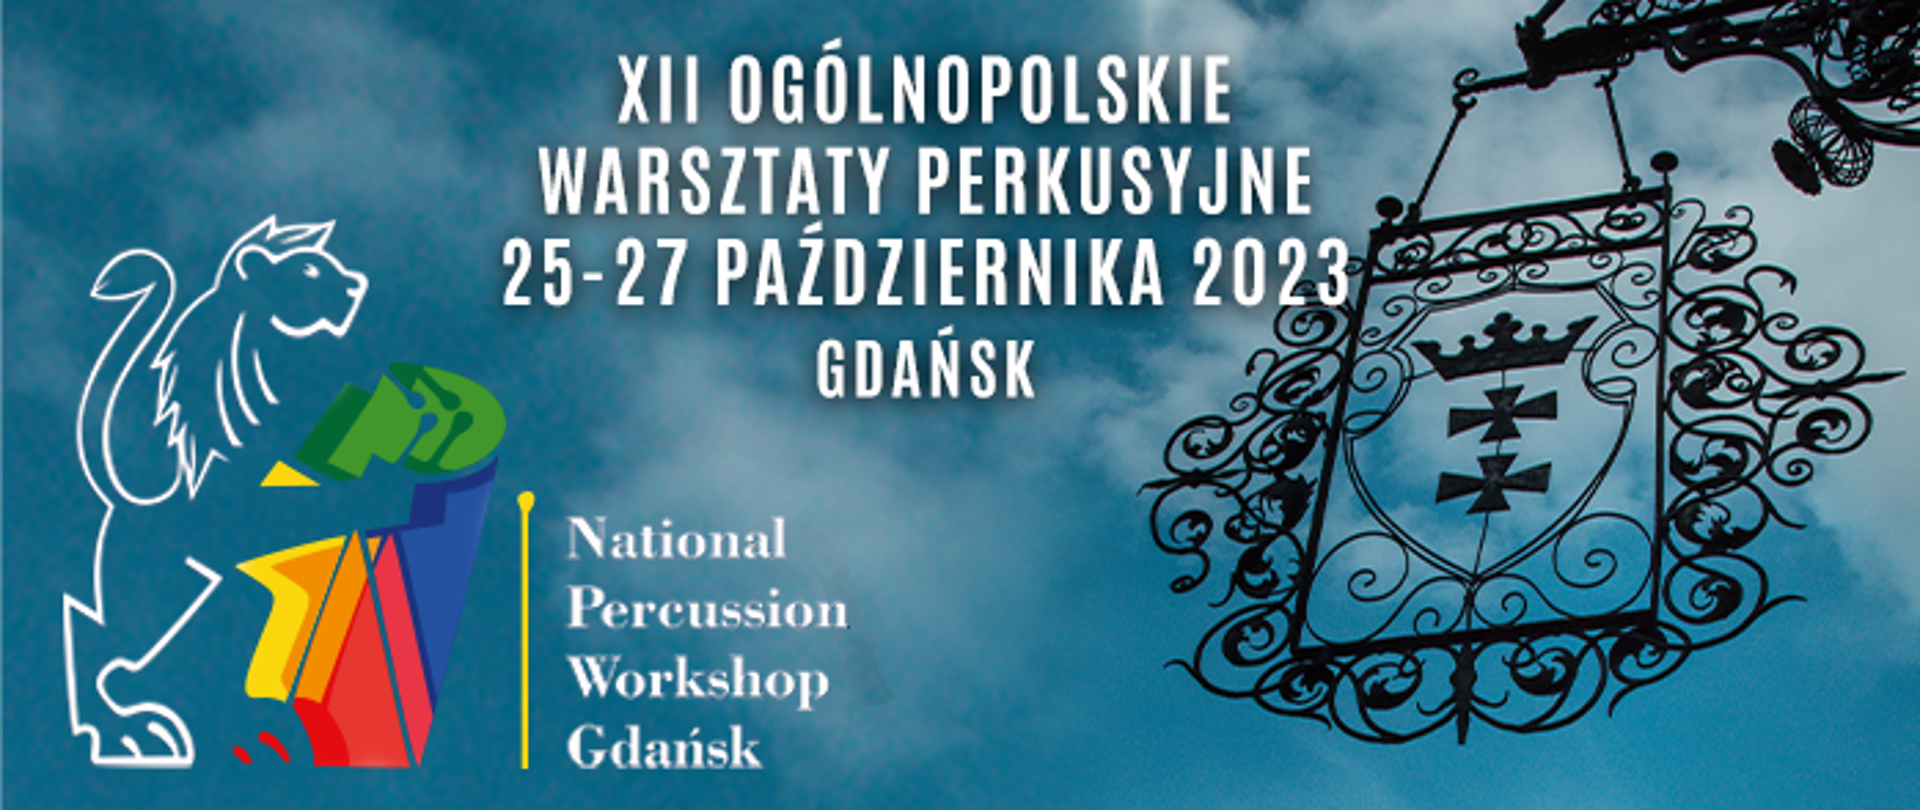 Na zdjęciu zachmurzonego nieba białym fontem napis XII Ogólnopolskie Warsztaty Perkusyjne logo konkursu oraz z prawej strony zdjęcie metalowego loga miasta Gdańska